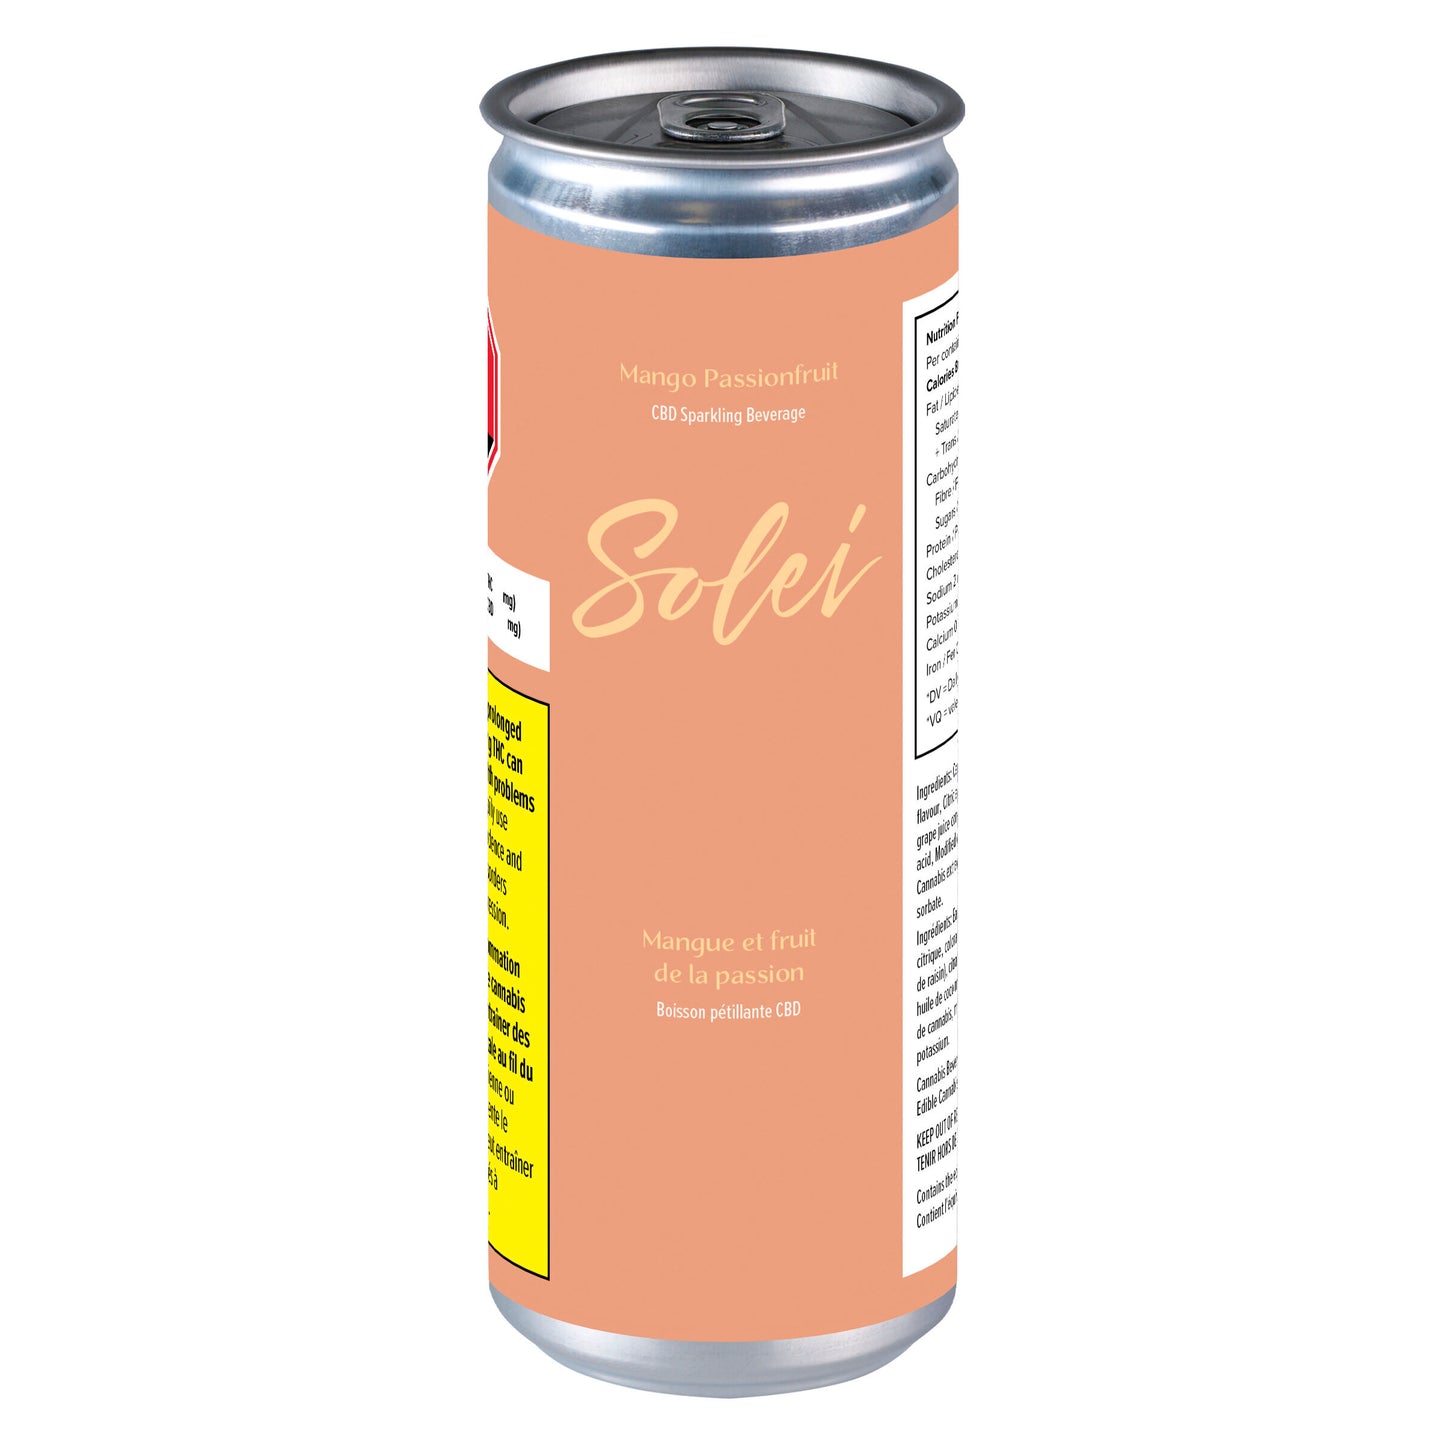 Solei - Mango Passionfruit CBD Sparkling Beverage